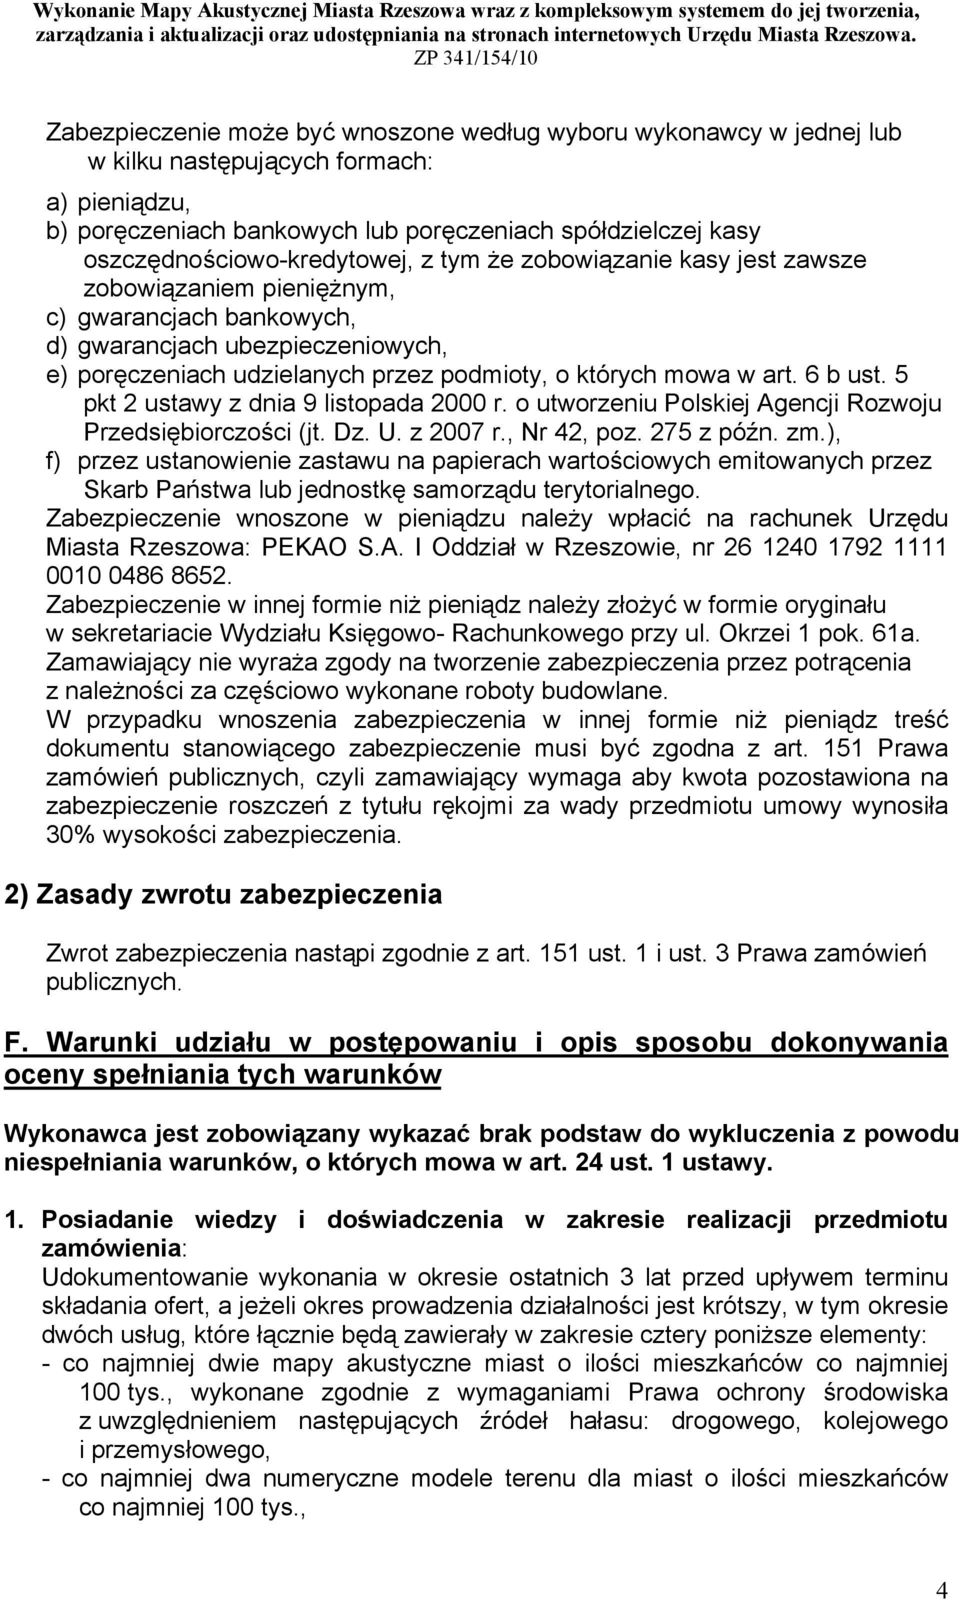 których mowa w art. 6 b ust. 5 pkt 2 ustawy z dnia 9 listopada 2000 r. o utworzeniu Polskiej Agencji Rozwoju Przedsiębiorczości (jt. Dz. U. z 2007 r., Nr 42, poz. 275 z późn. zm.